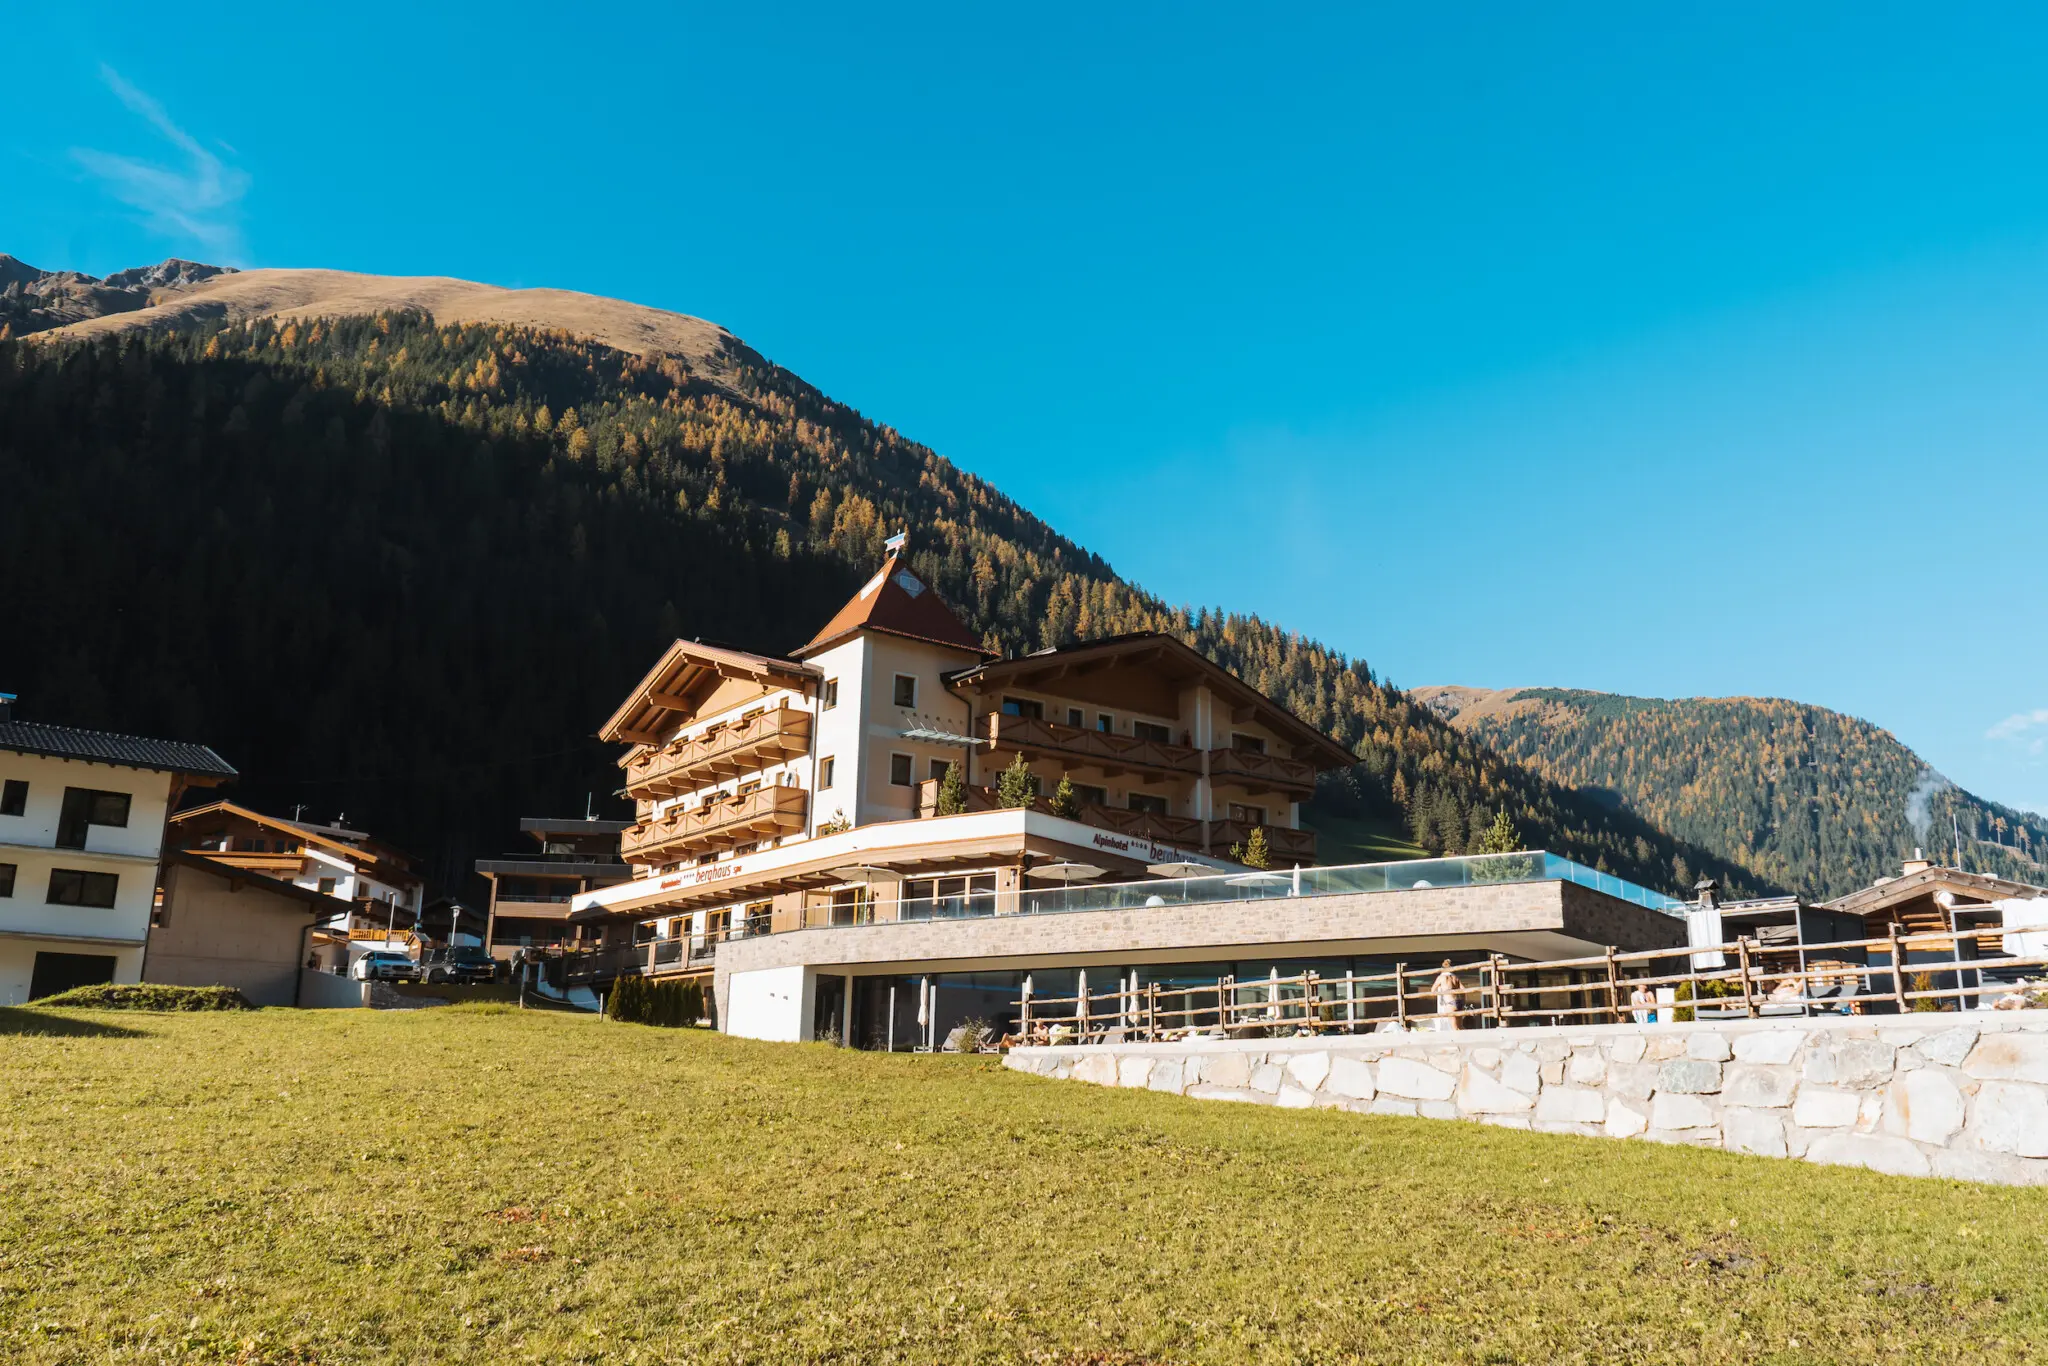 Das Alpinhotel Berghaus in Tux ist immer einen Besuch wert